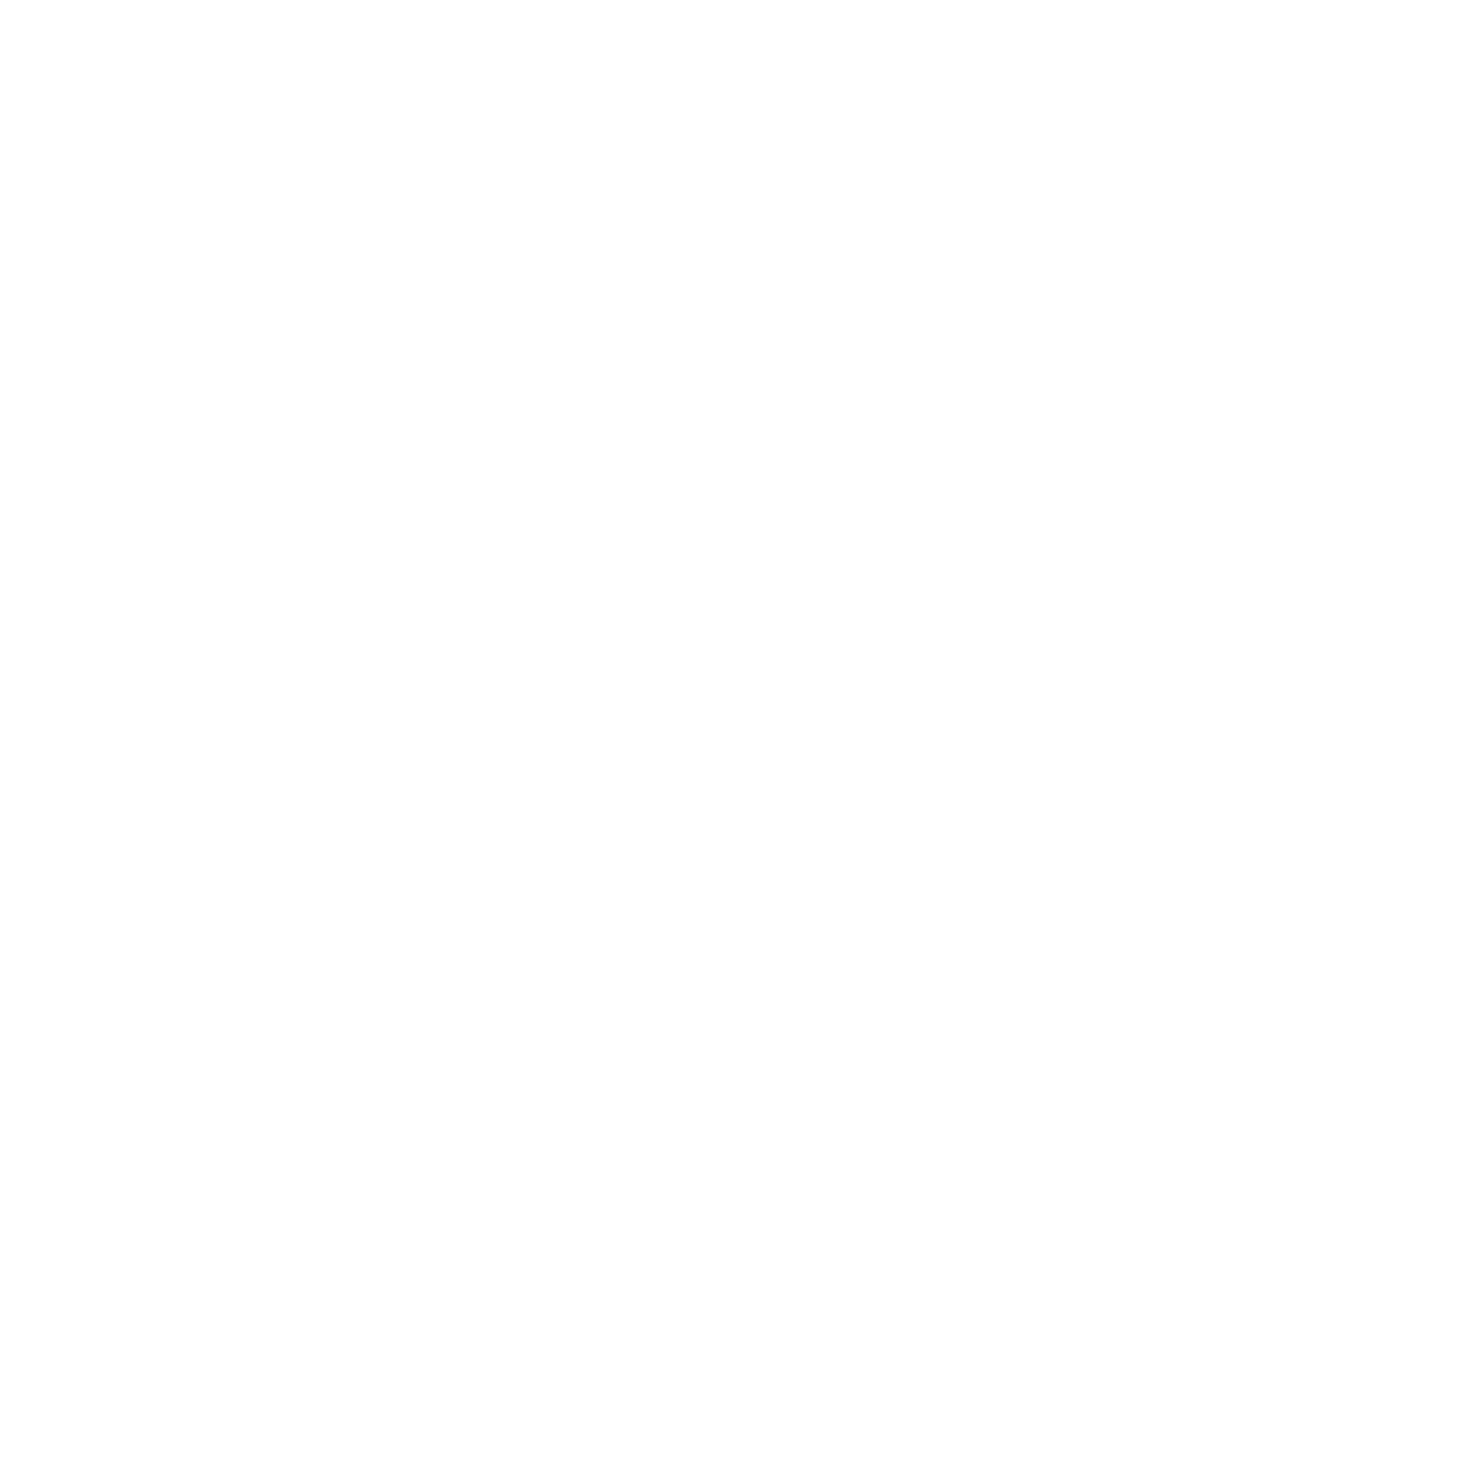 TEO Observatoire de la transition énergétique et écologique en Pays de la Loire